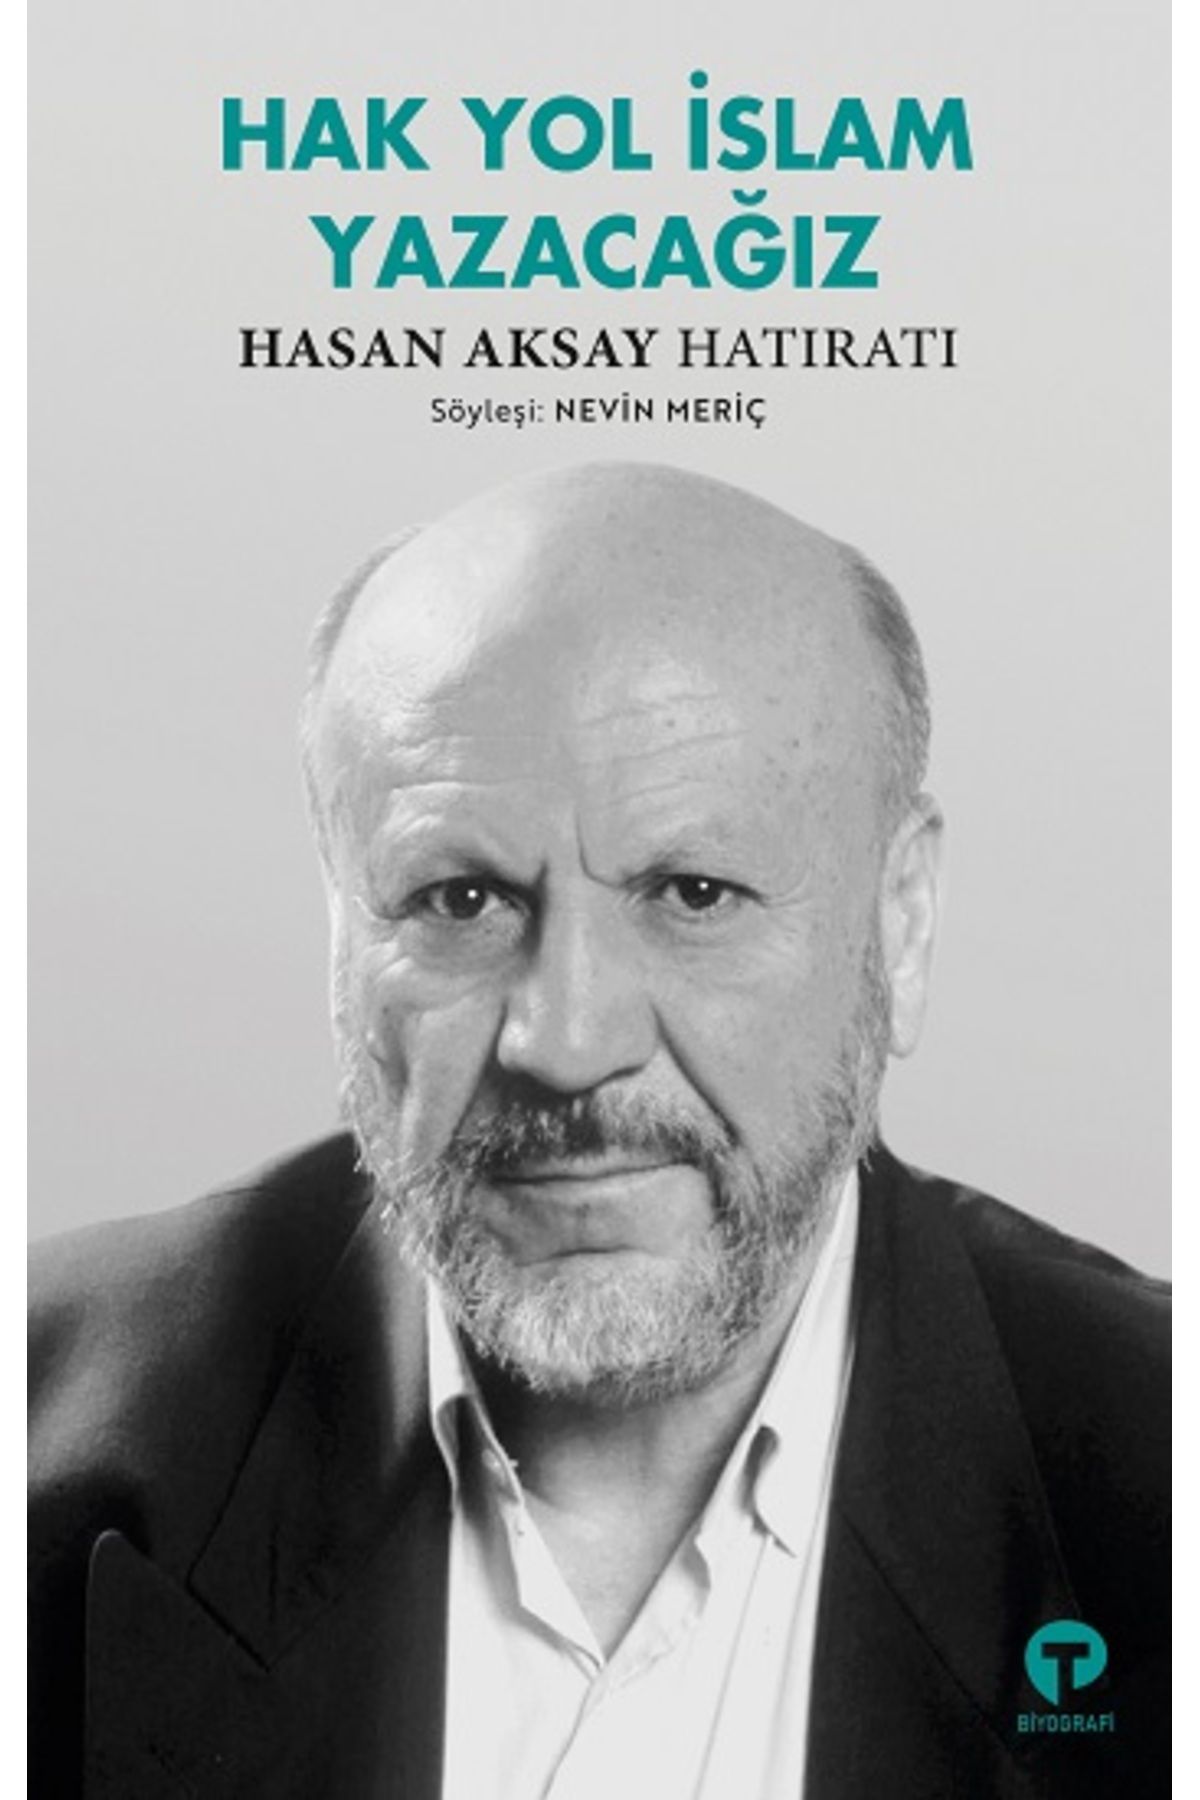 Turkuvaz Kitap Hak Yol İslam Yazacağız - Hasan Aksay Hatıratı